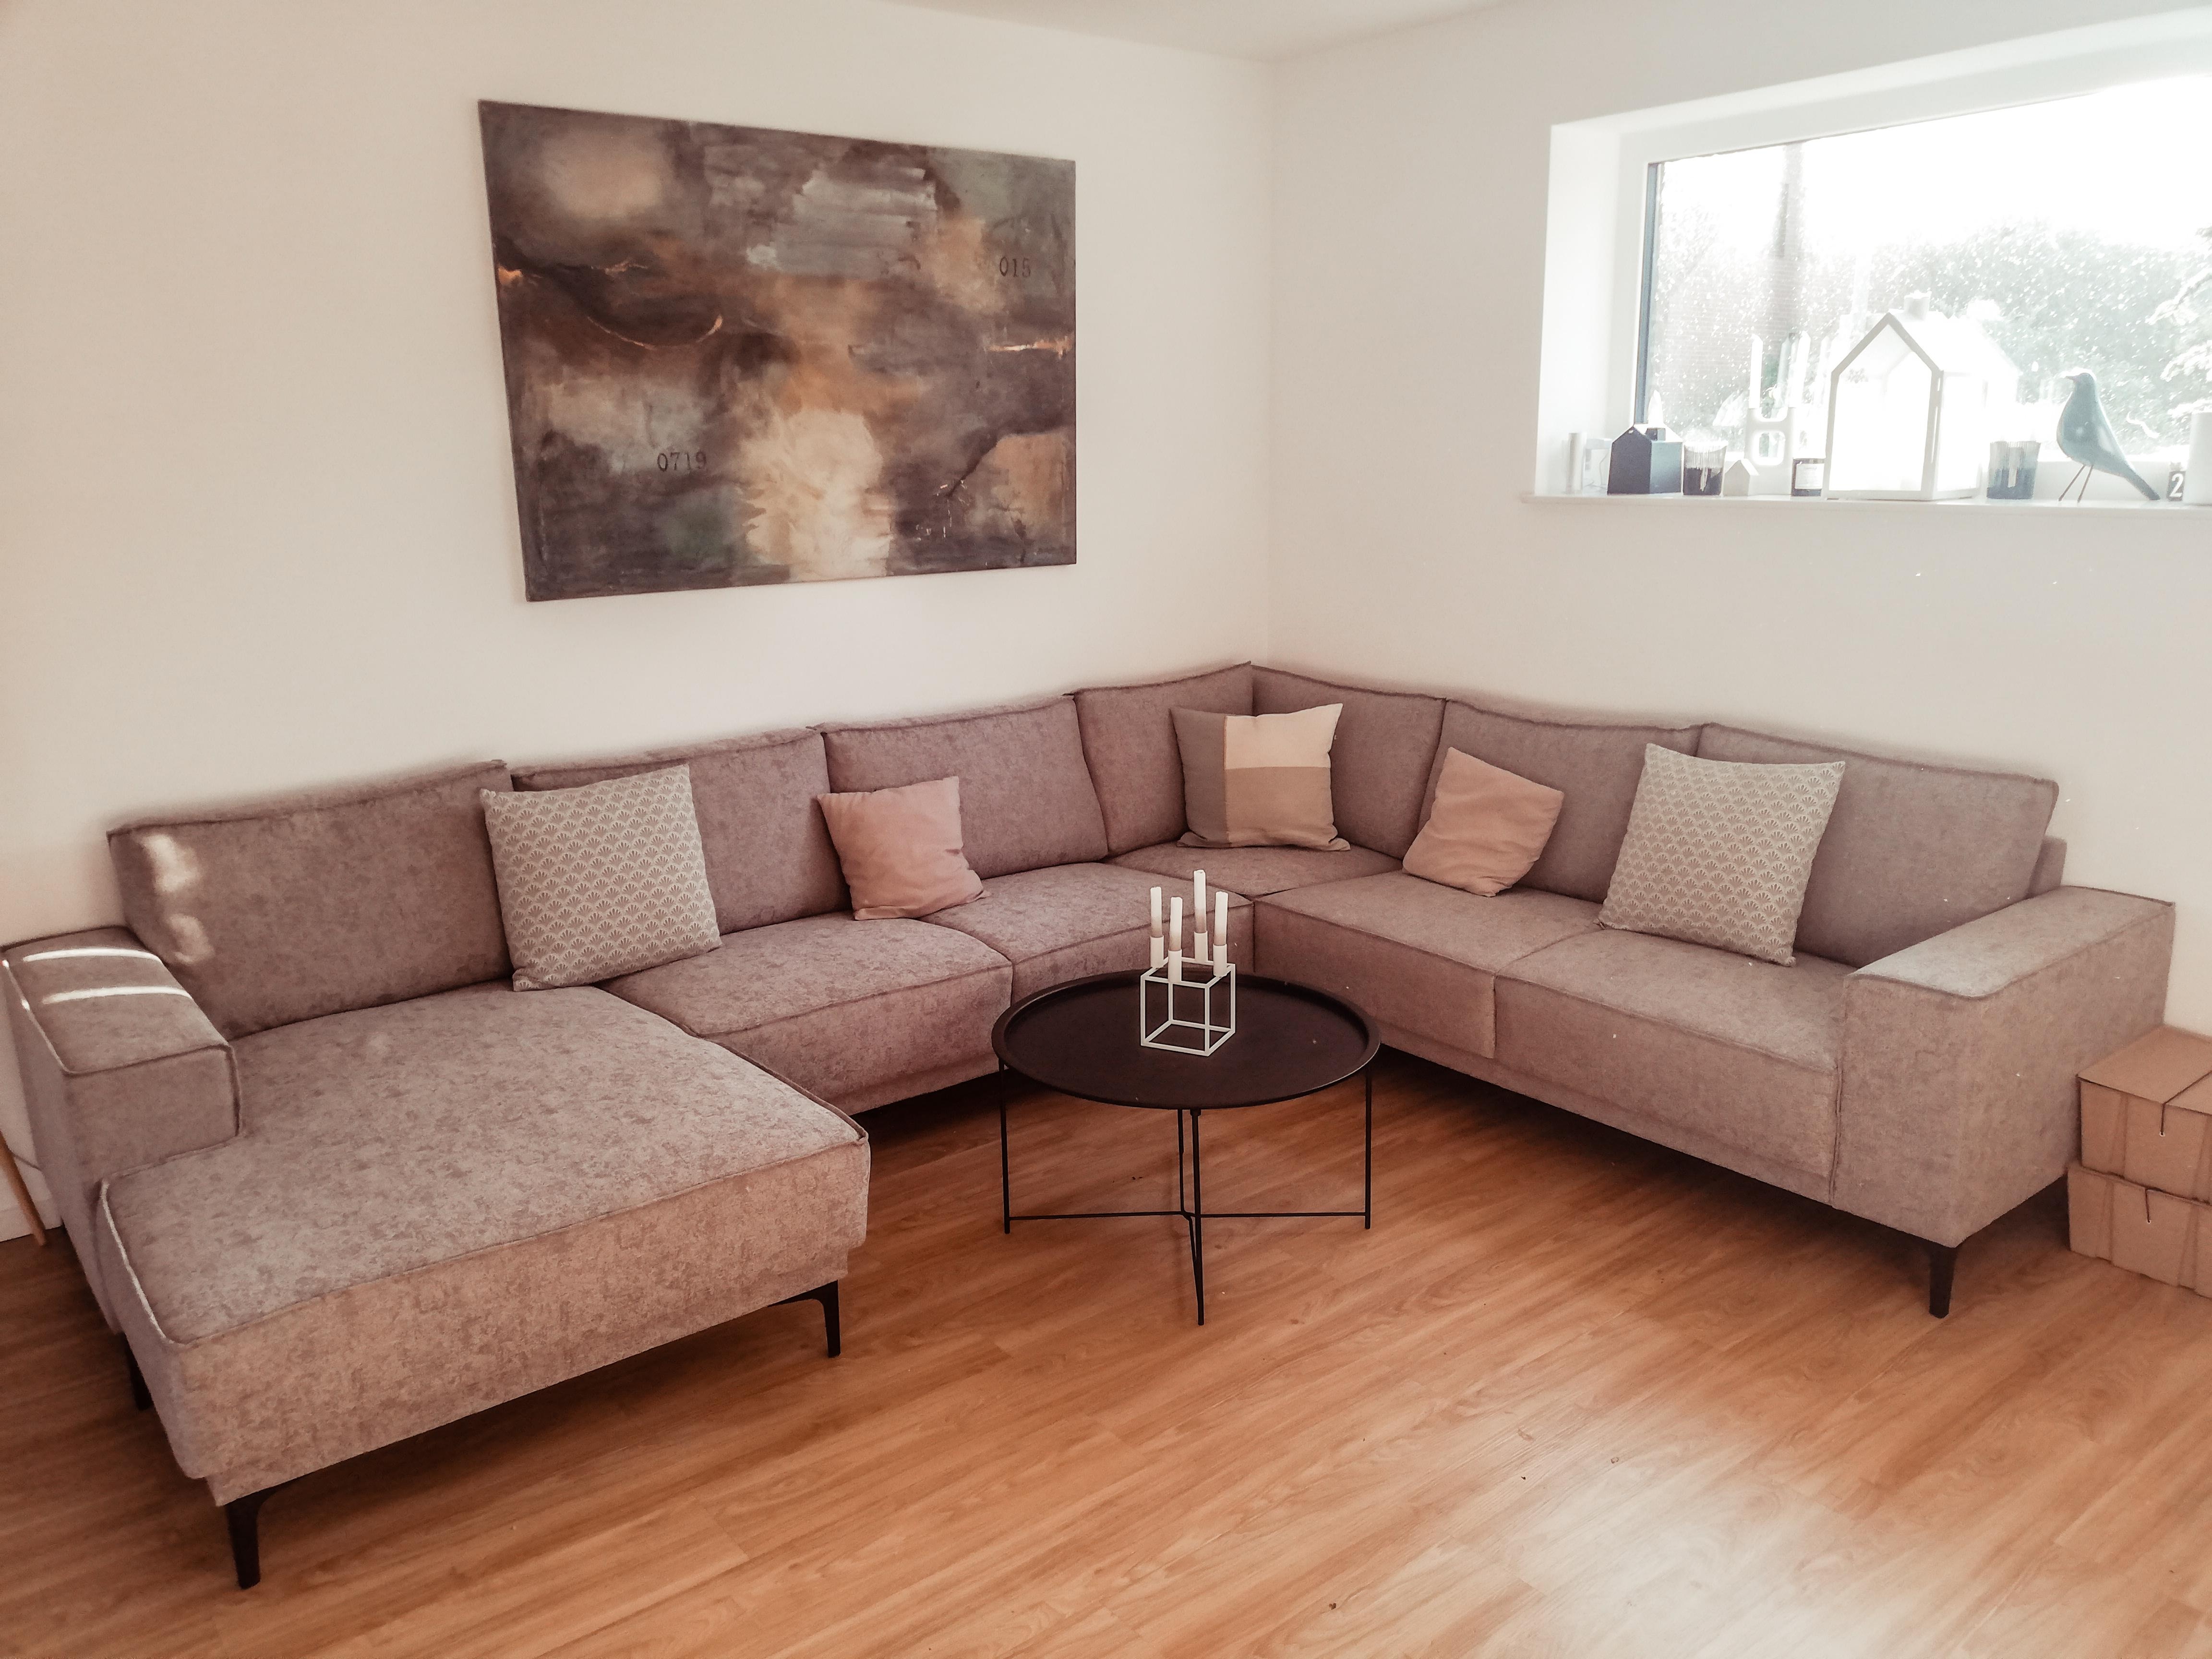 Nach 5 Monaten warten unsere neue Couch #couch #newcouch #wohnzimmer #livingroom #neuhier 